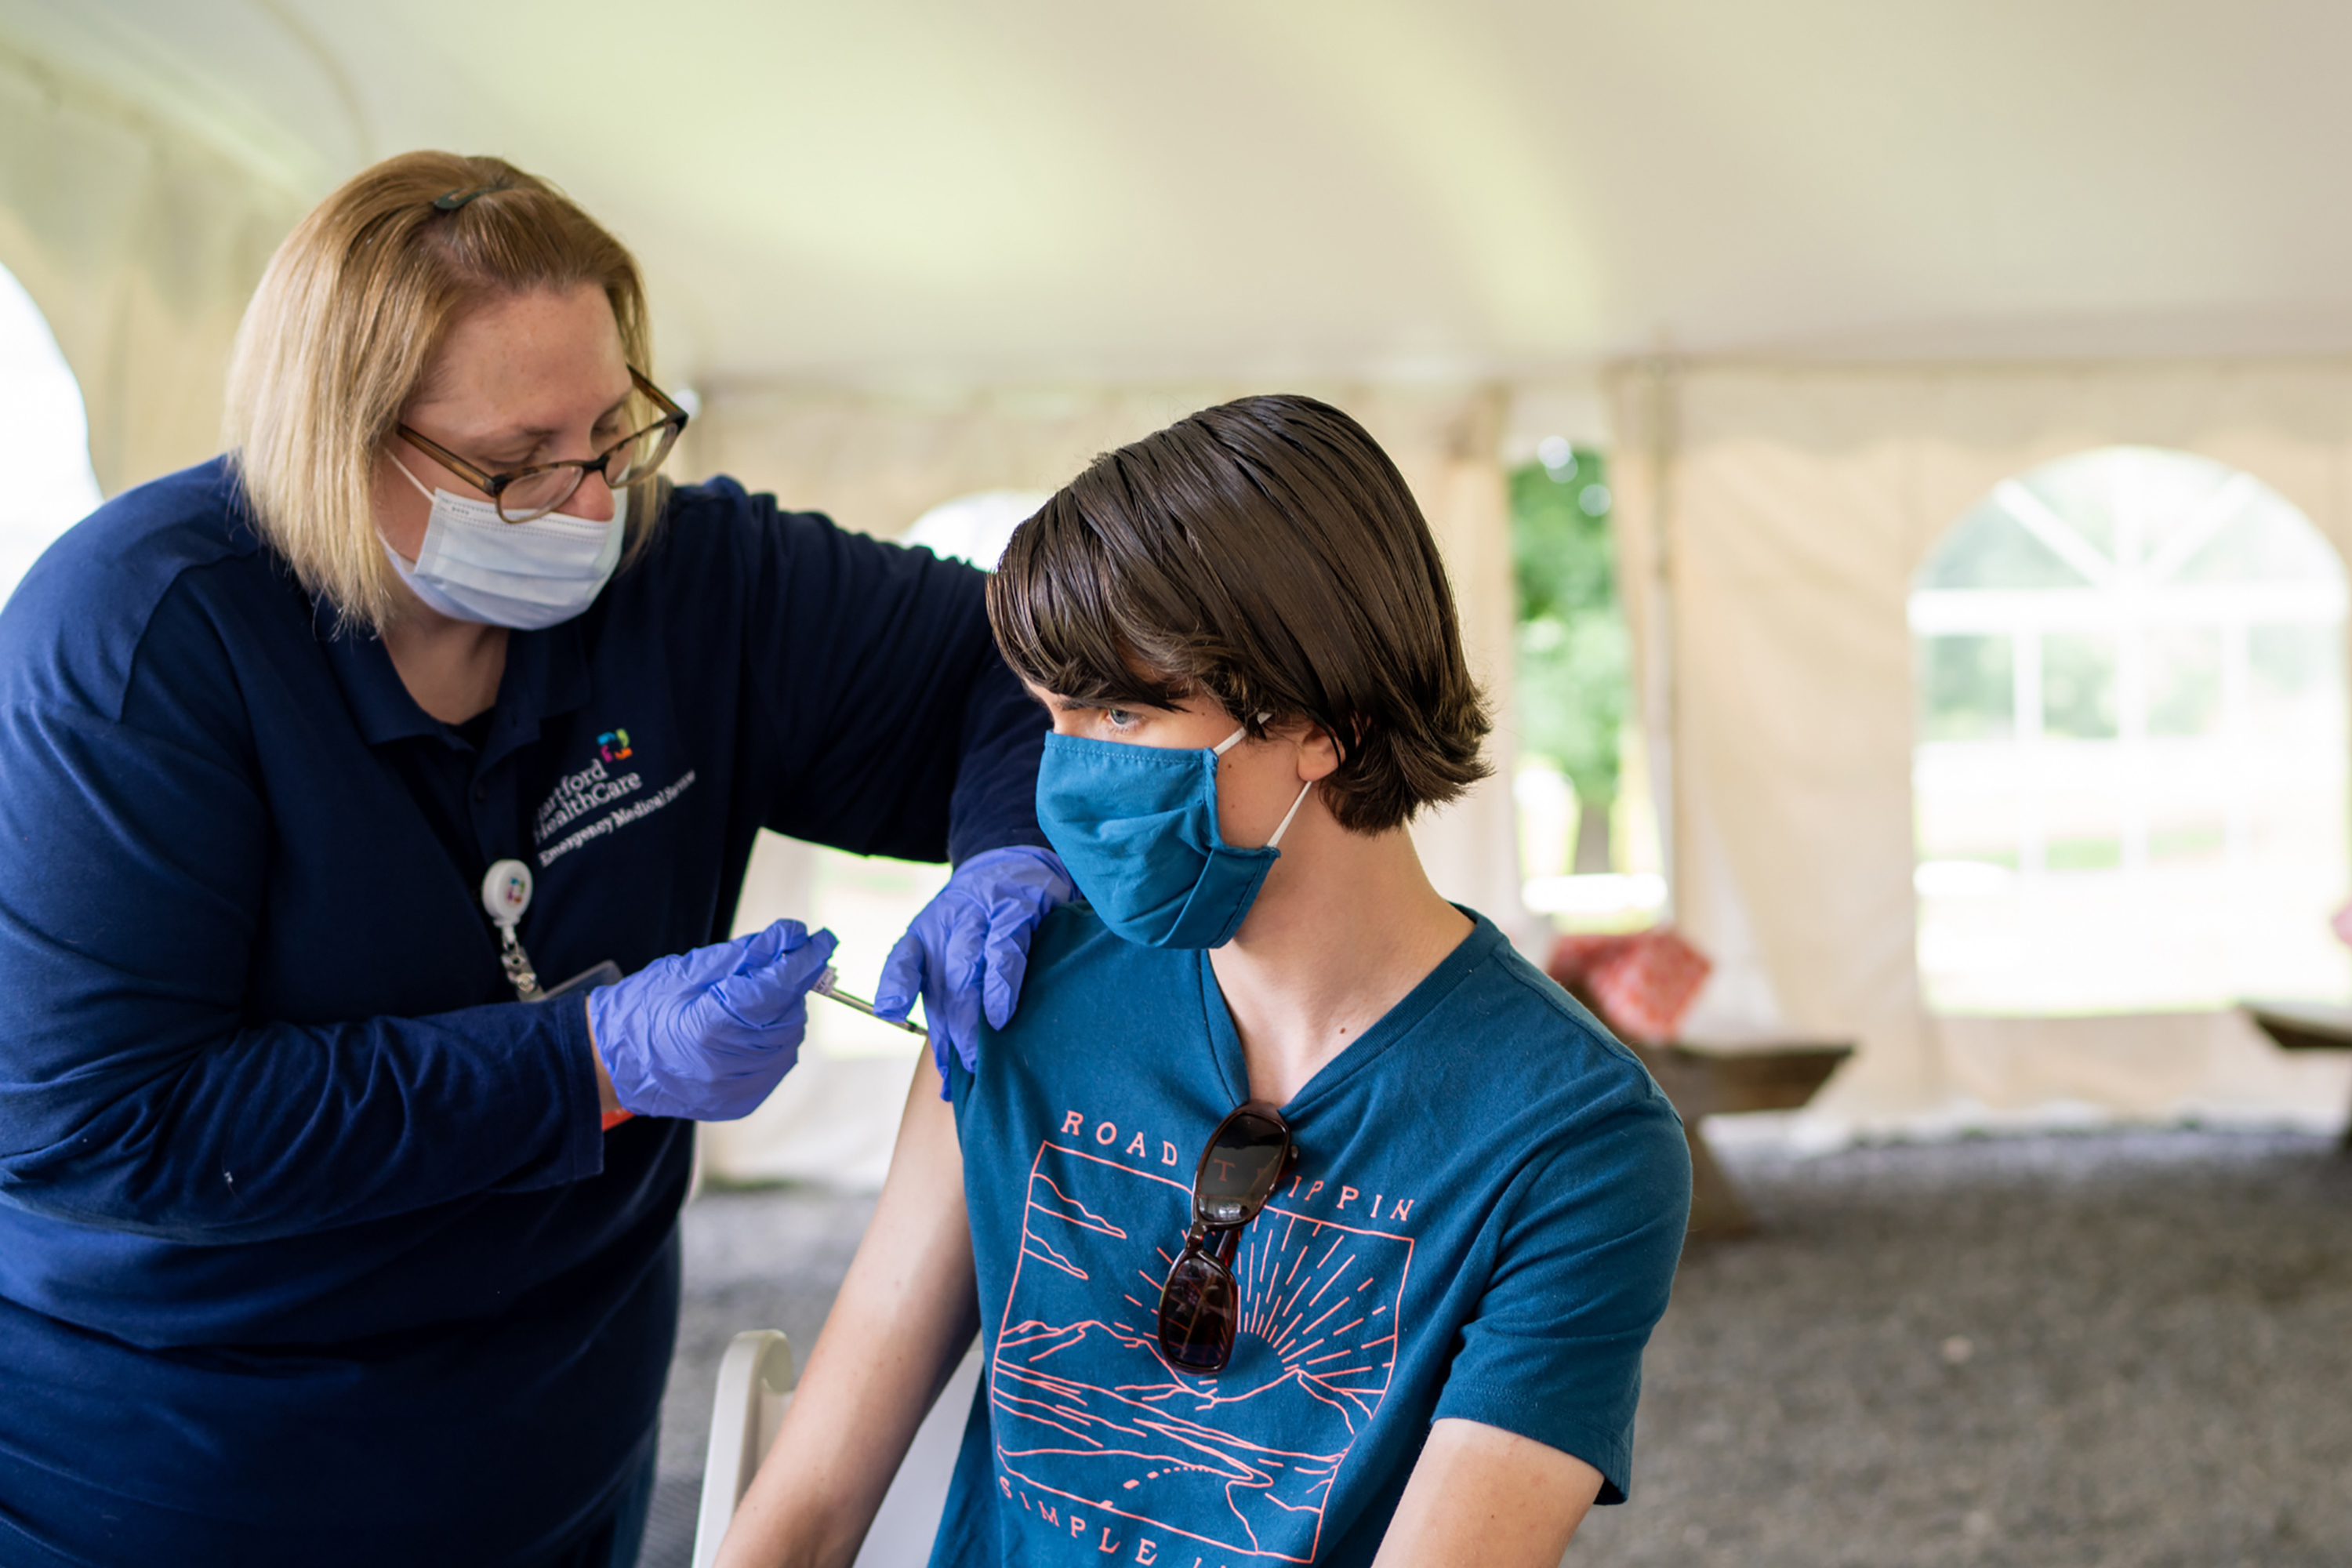 Un adolescente recibe una vacuna contra el COVID-19 en una clínica temporal en Middlefield, Connecticut, el 22 de julio de 2021. (Foto Prensa Libre: Christopher Capozziello/The New York Times)